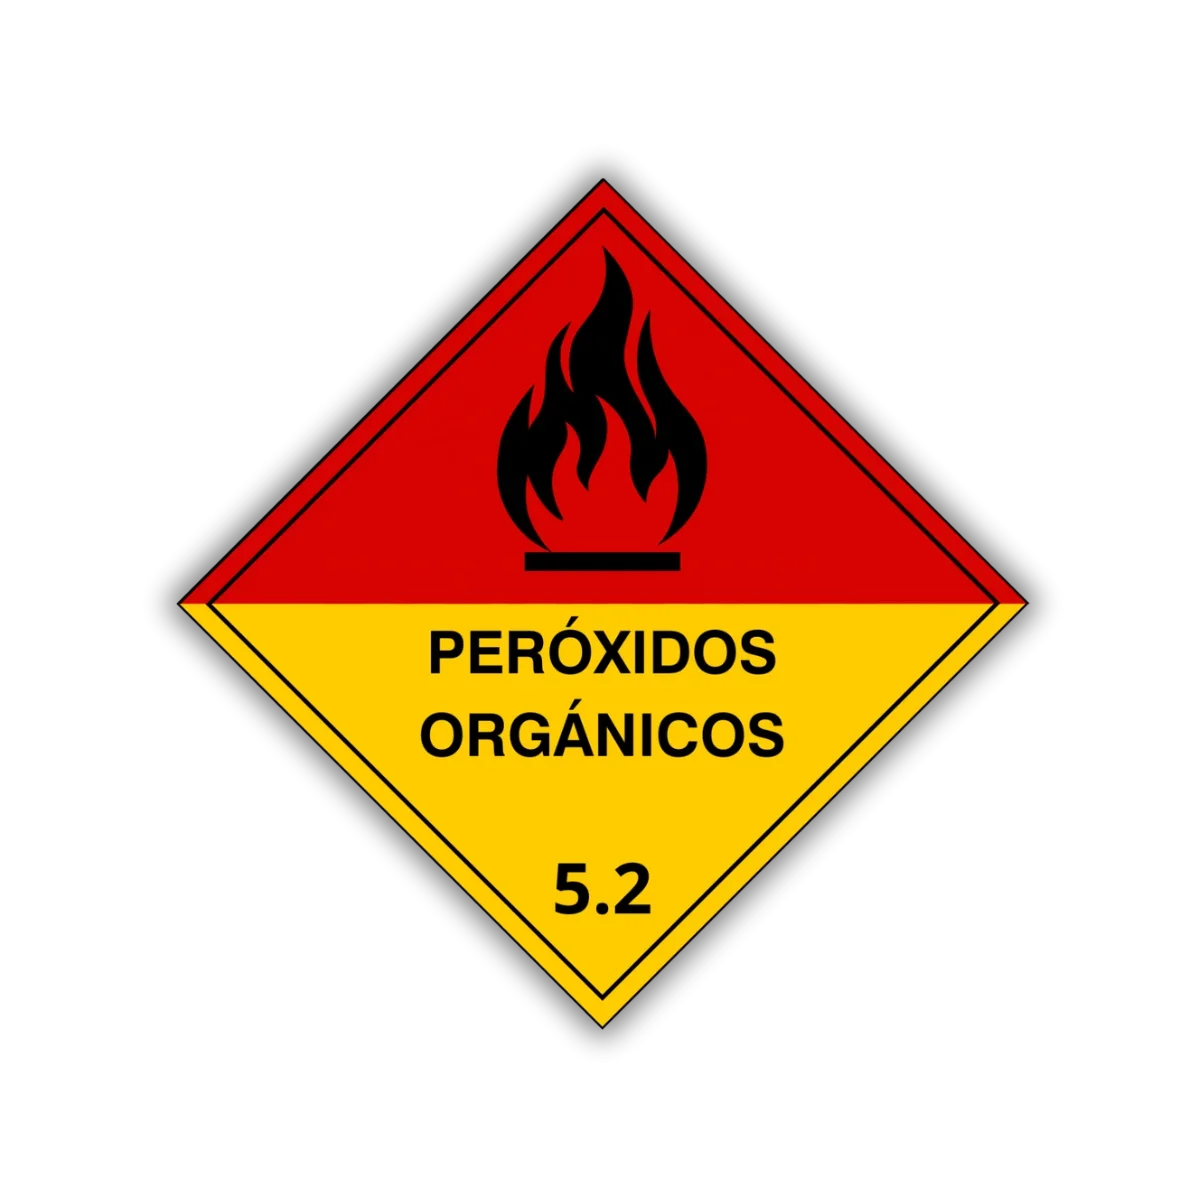 Le etiqueta peróxidos orgánicos ayuda a identificar el resguardo de materiales volátiles